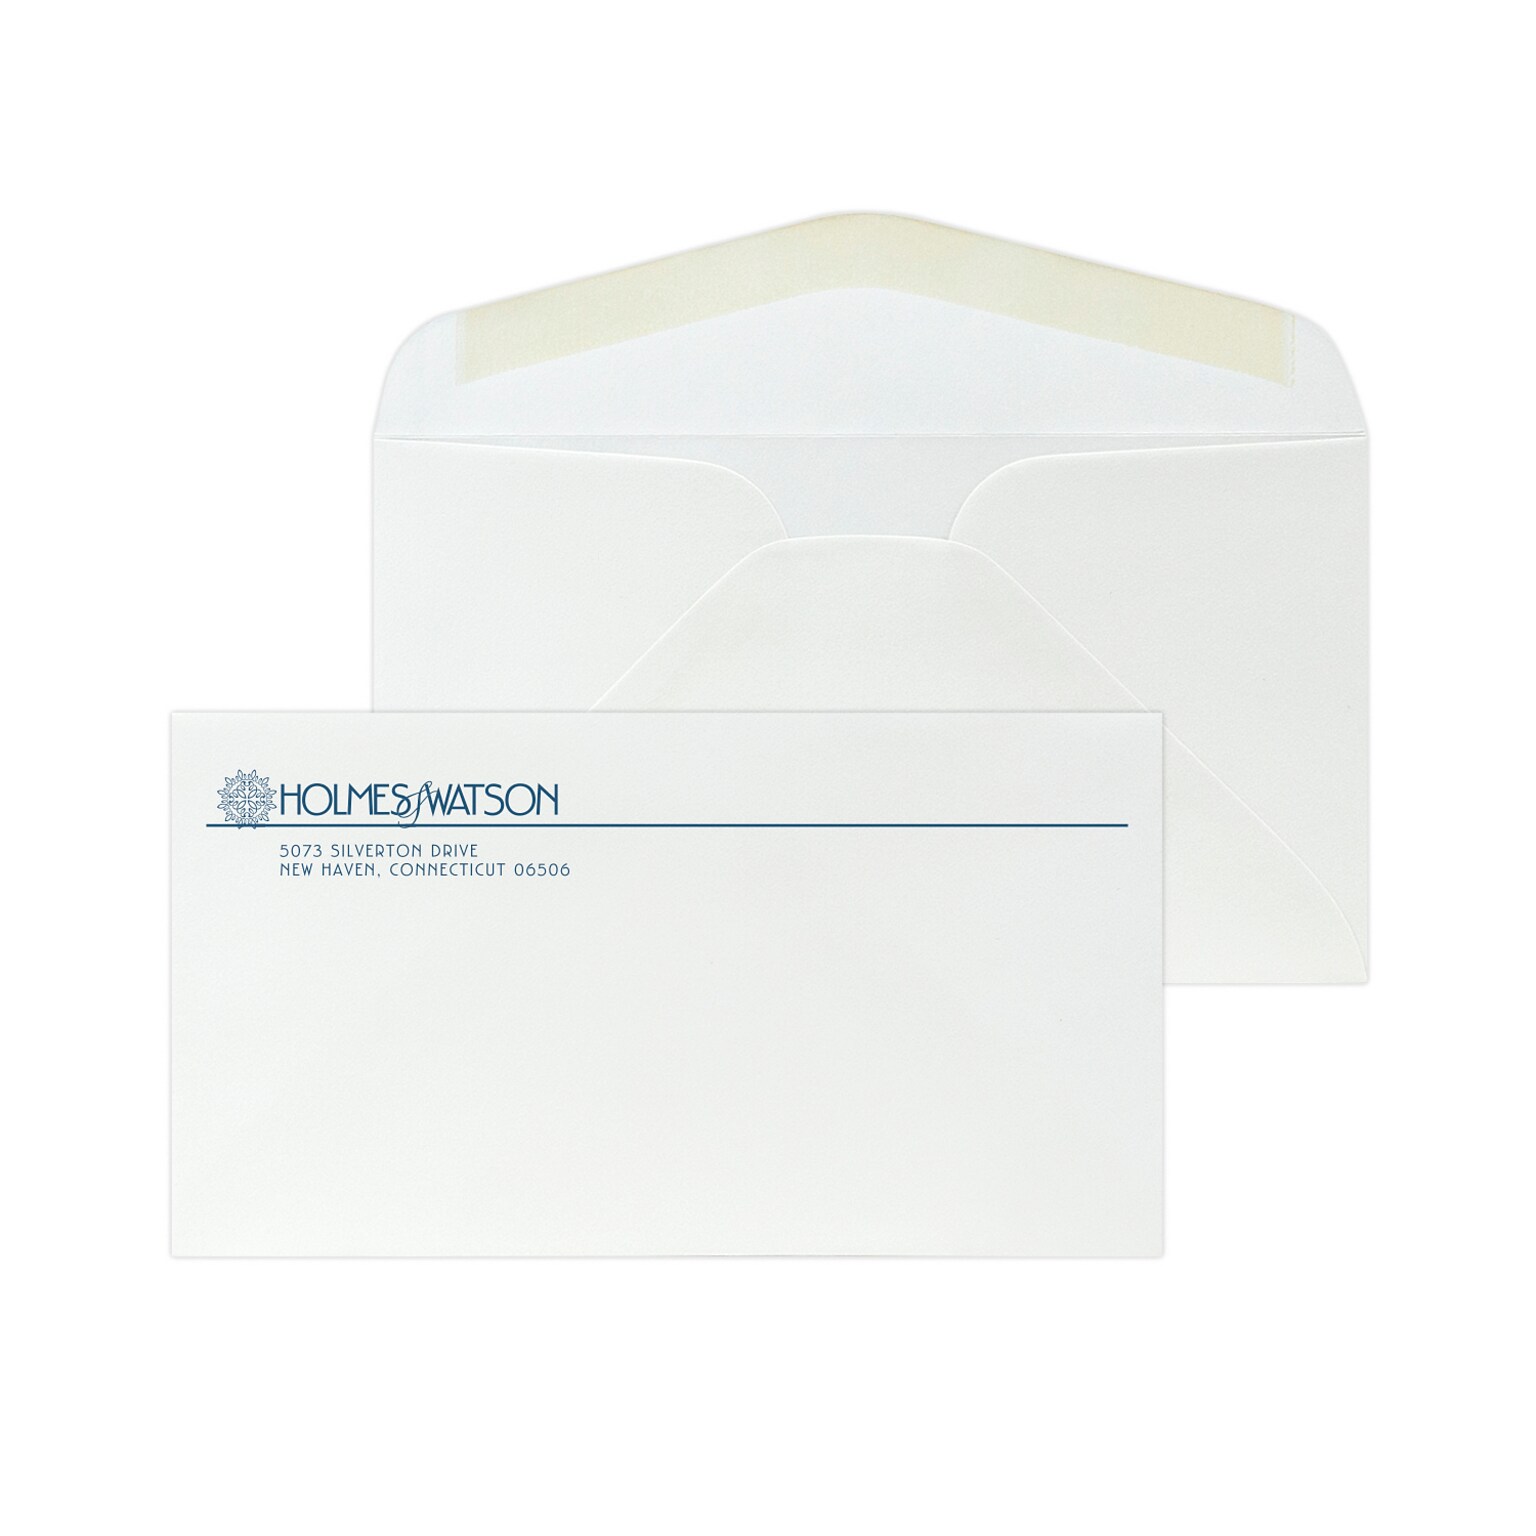 Custom #6-3/4 Standard Envelopes, 3 5/8 x 6 1/2, 24# White 25% Cotton Bond, 1 Custom Ink, 250 / Pack